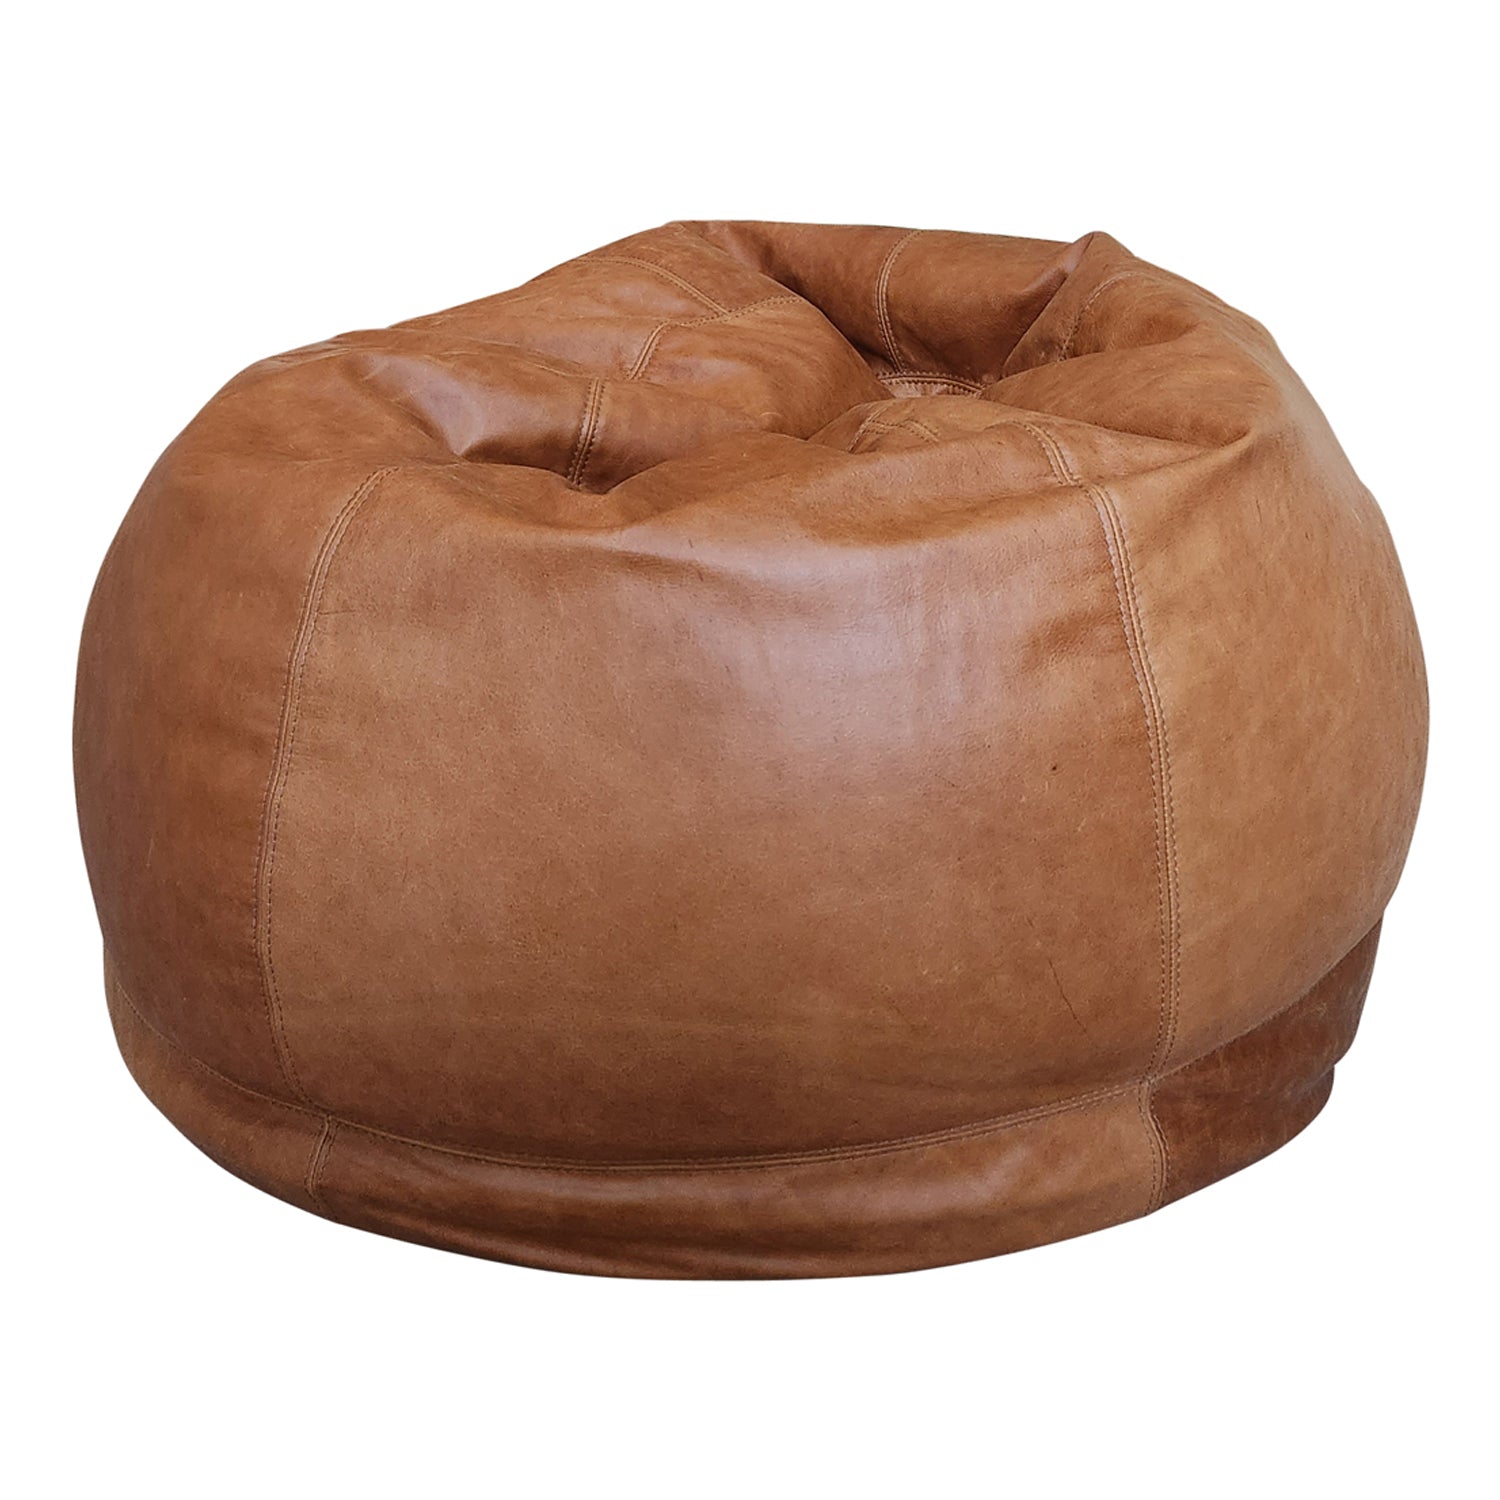 Tear Drop Pear Shape Leather Bean Bag Cover - China Bean Bag Chair